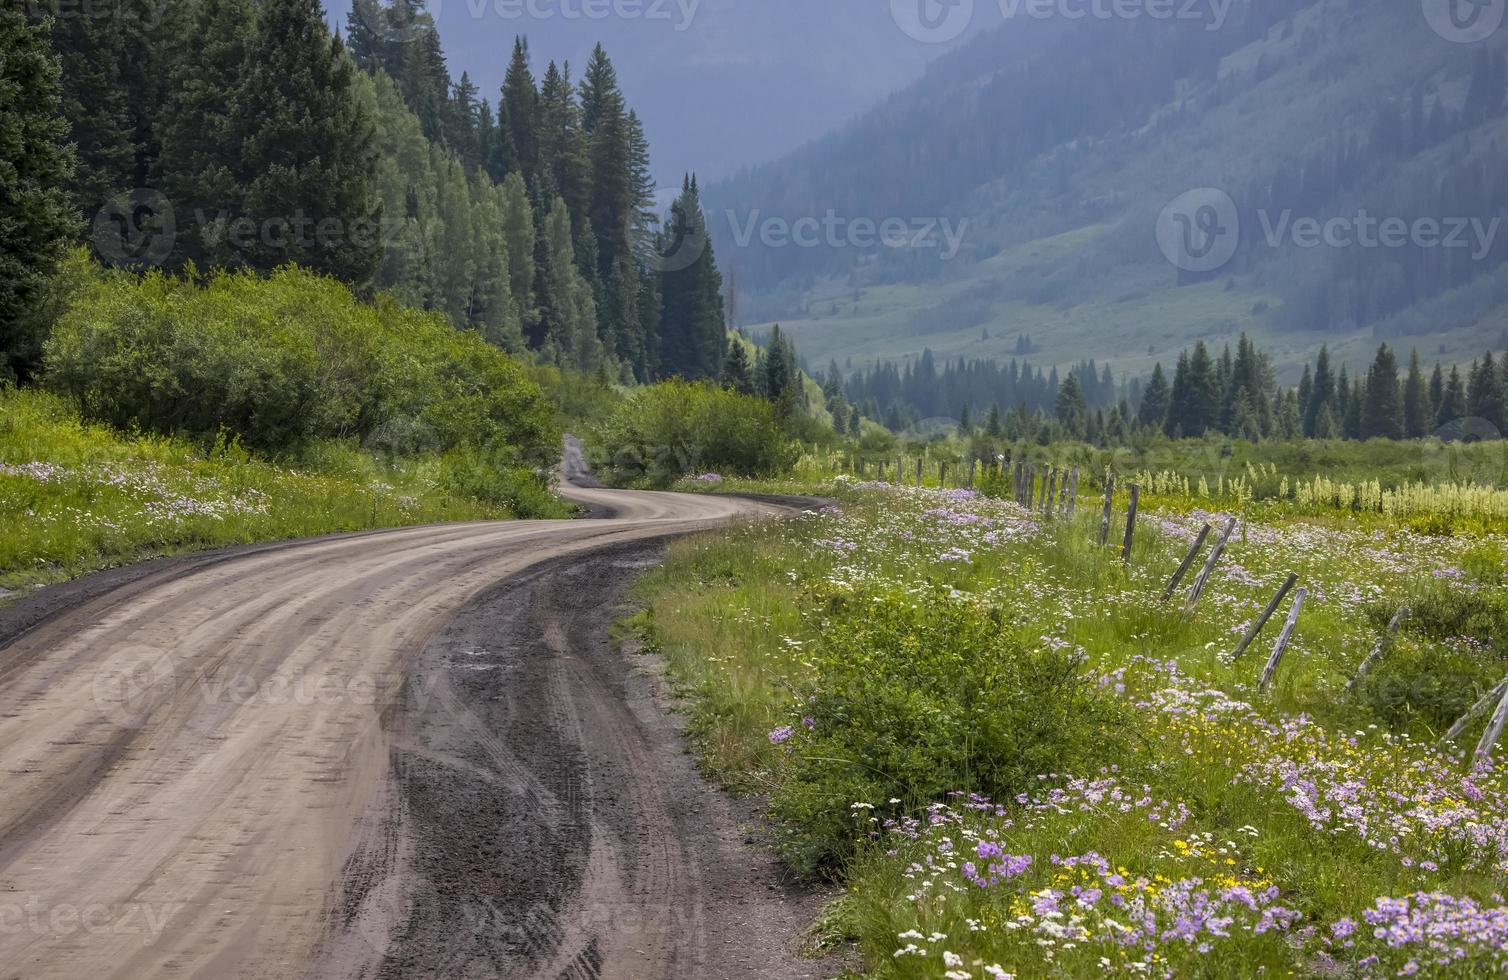 carretera secundaria escénica 734 a través de prados de flores silvestres en las montañas rocosas de colorado cerca de crested butte foto